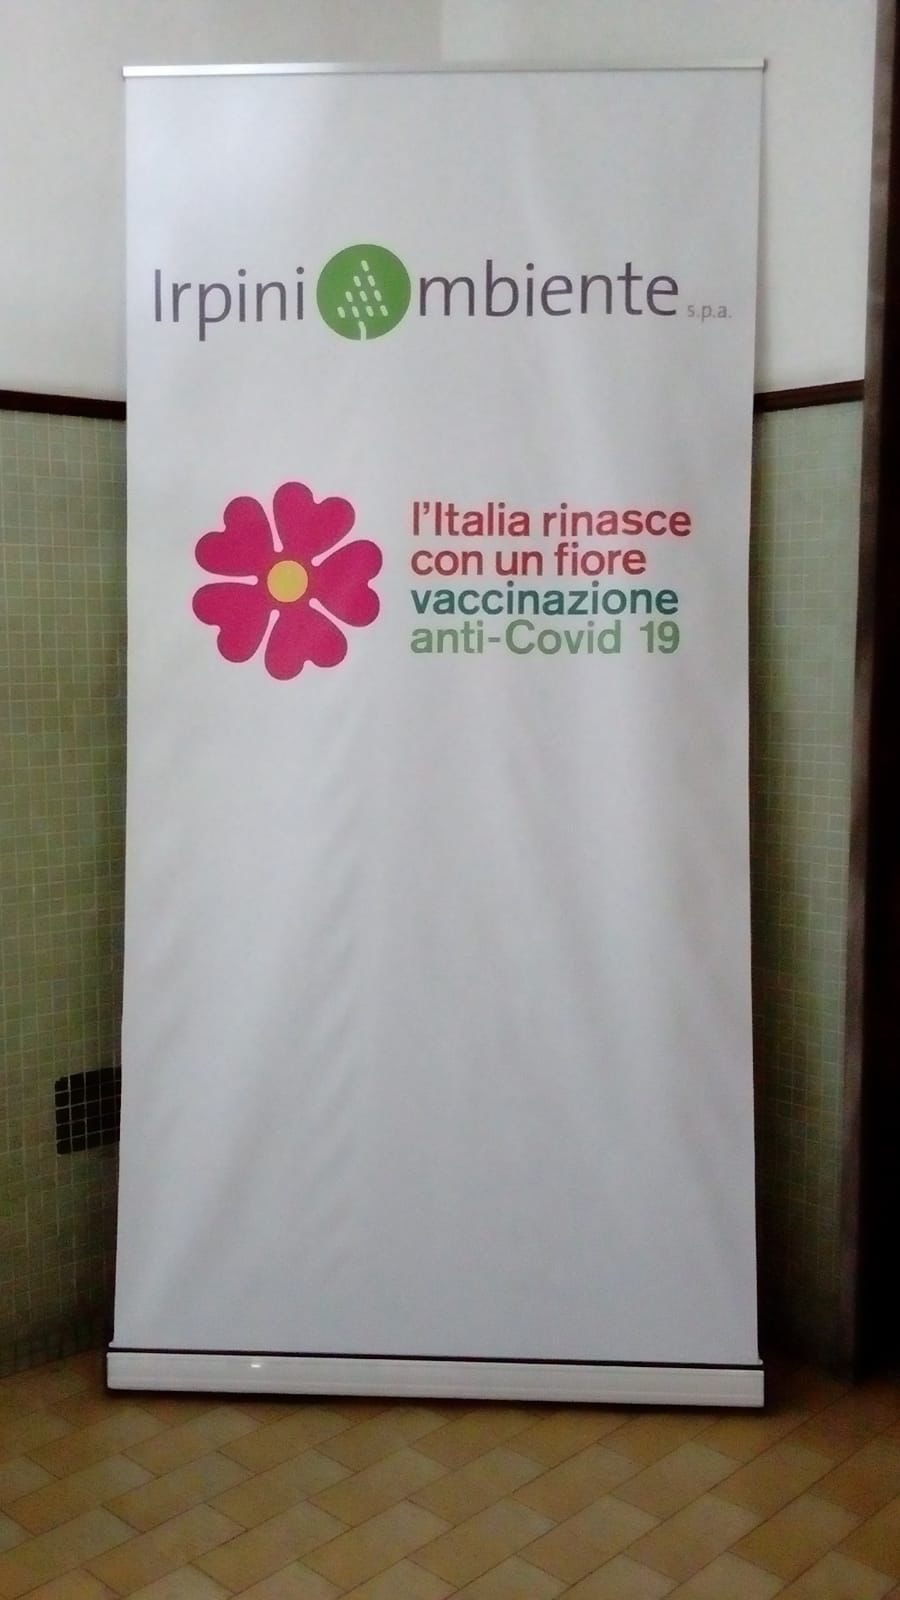 Avellino| Vaccini anti-covid, somministrate le prime dosi a 40 dipendenti di IrpiniAmbiente